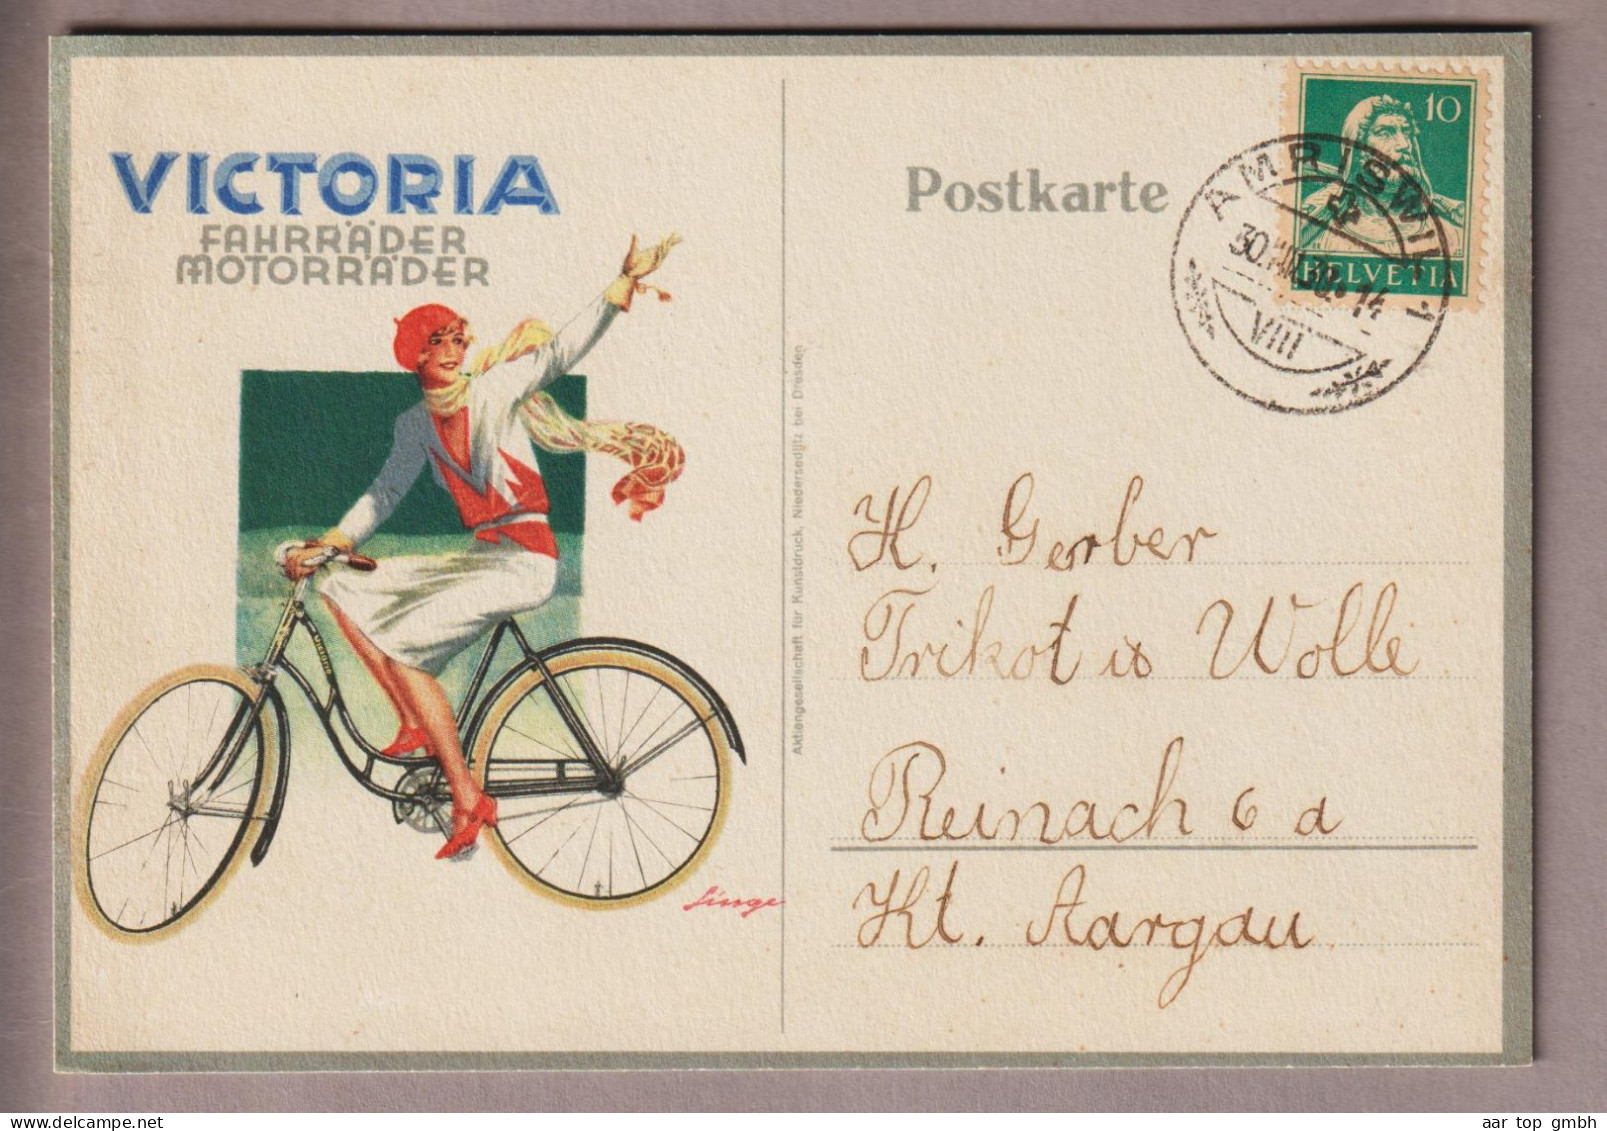 Motiv Fahrräder/Motorräder Illustrierte Postkarte Von Amriswil Nach Reinach "Victoria" - Ciclismo